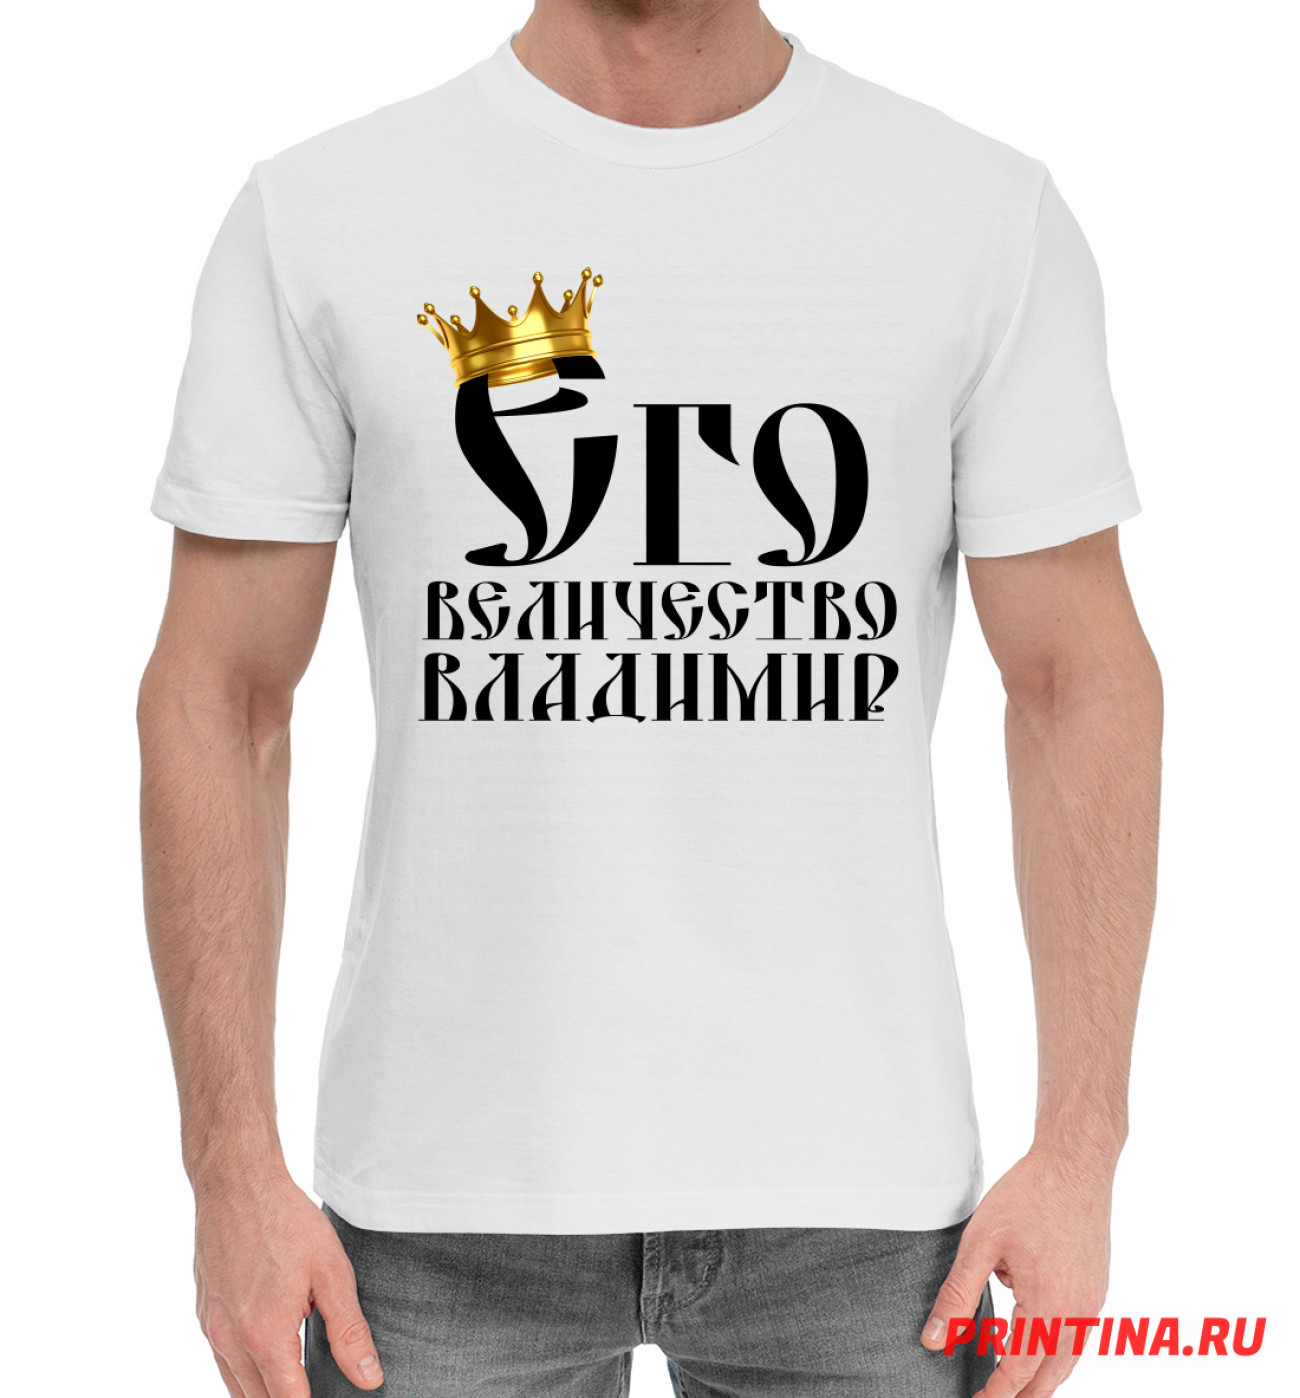 Мужская Хлопковая футболка Его величество Владимир, артикул: VLA-745270-hfu-2